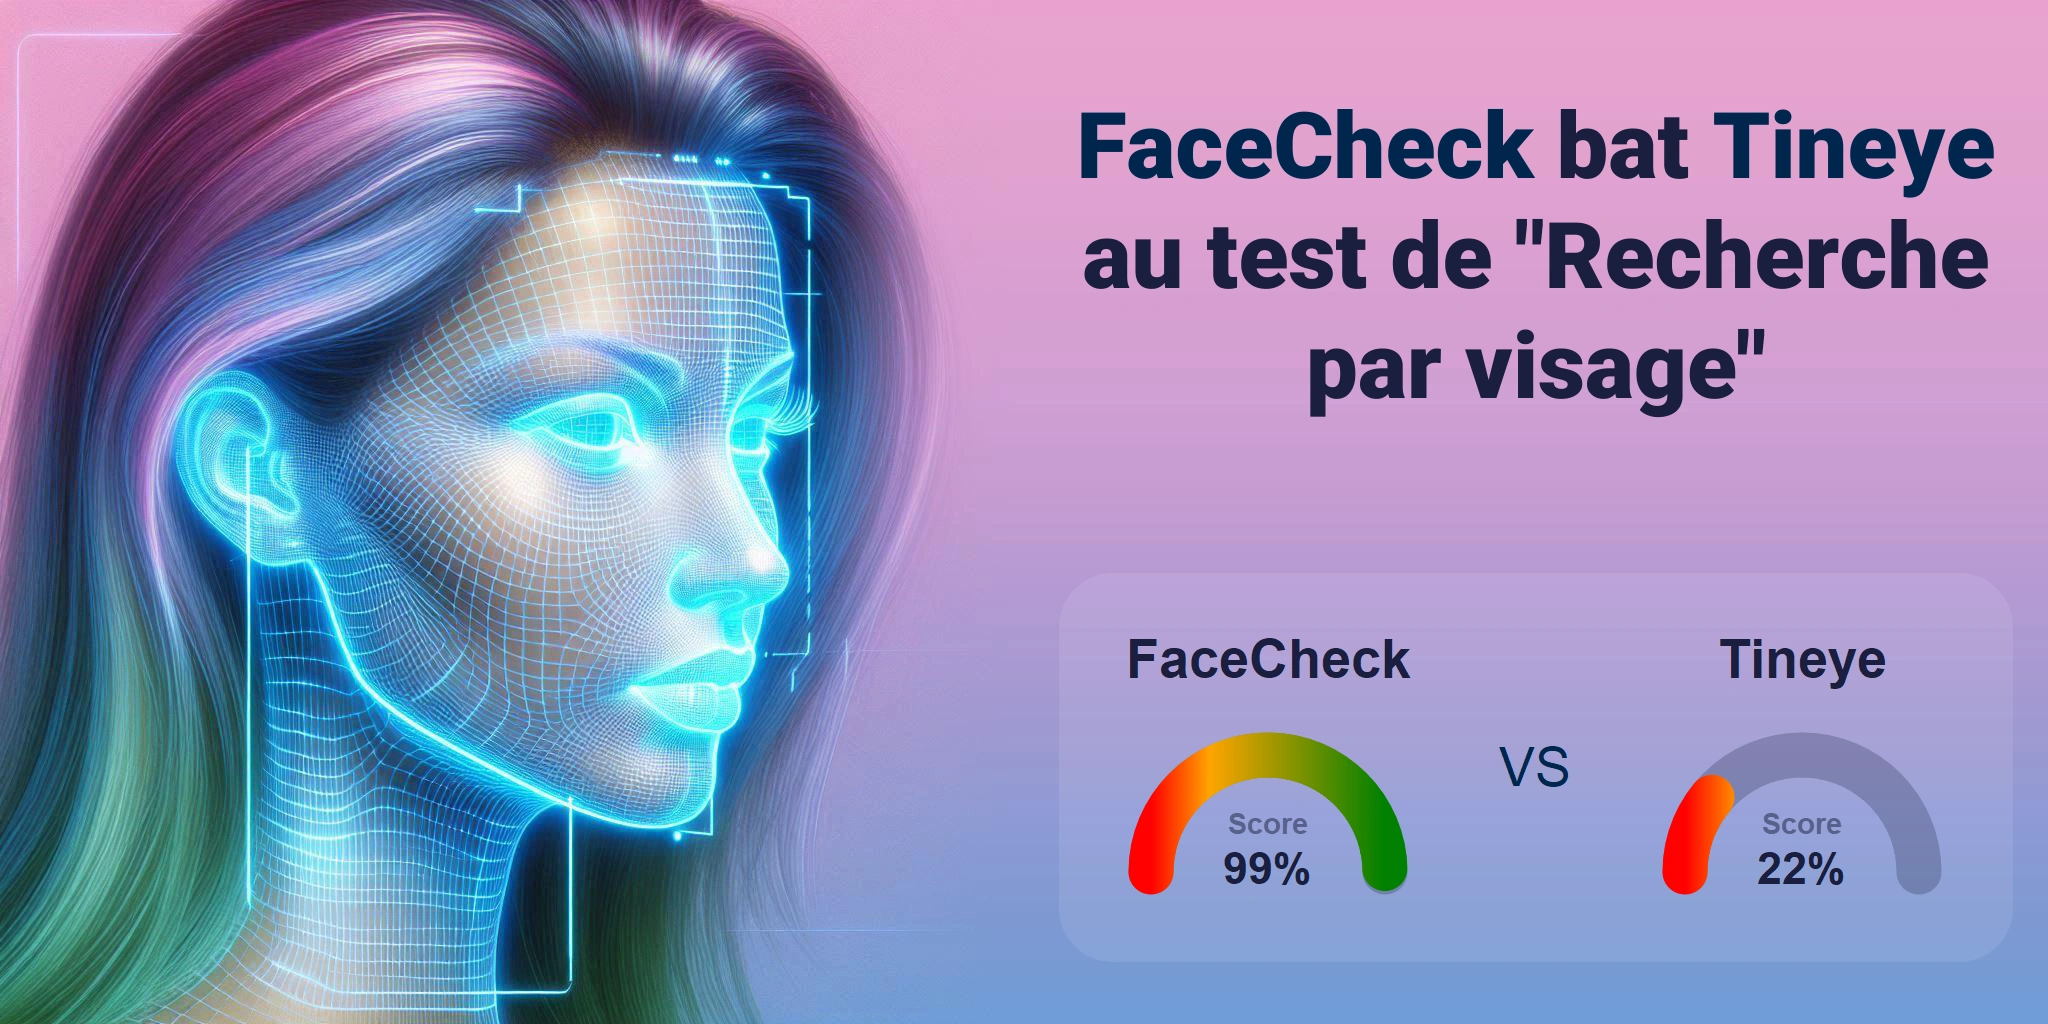 Quel est le meilleur pour la recherche faciale : <br>FaceCheck ou Tineye ?